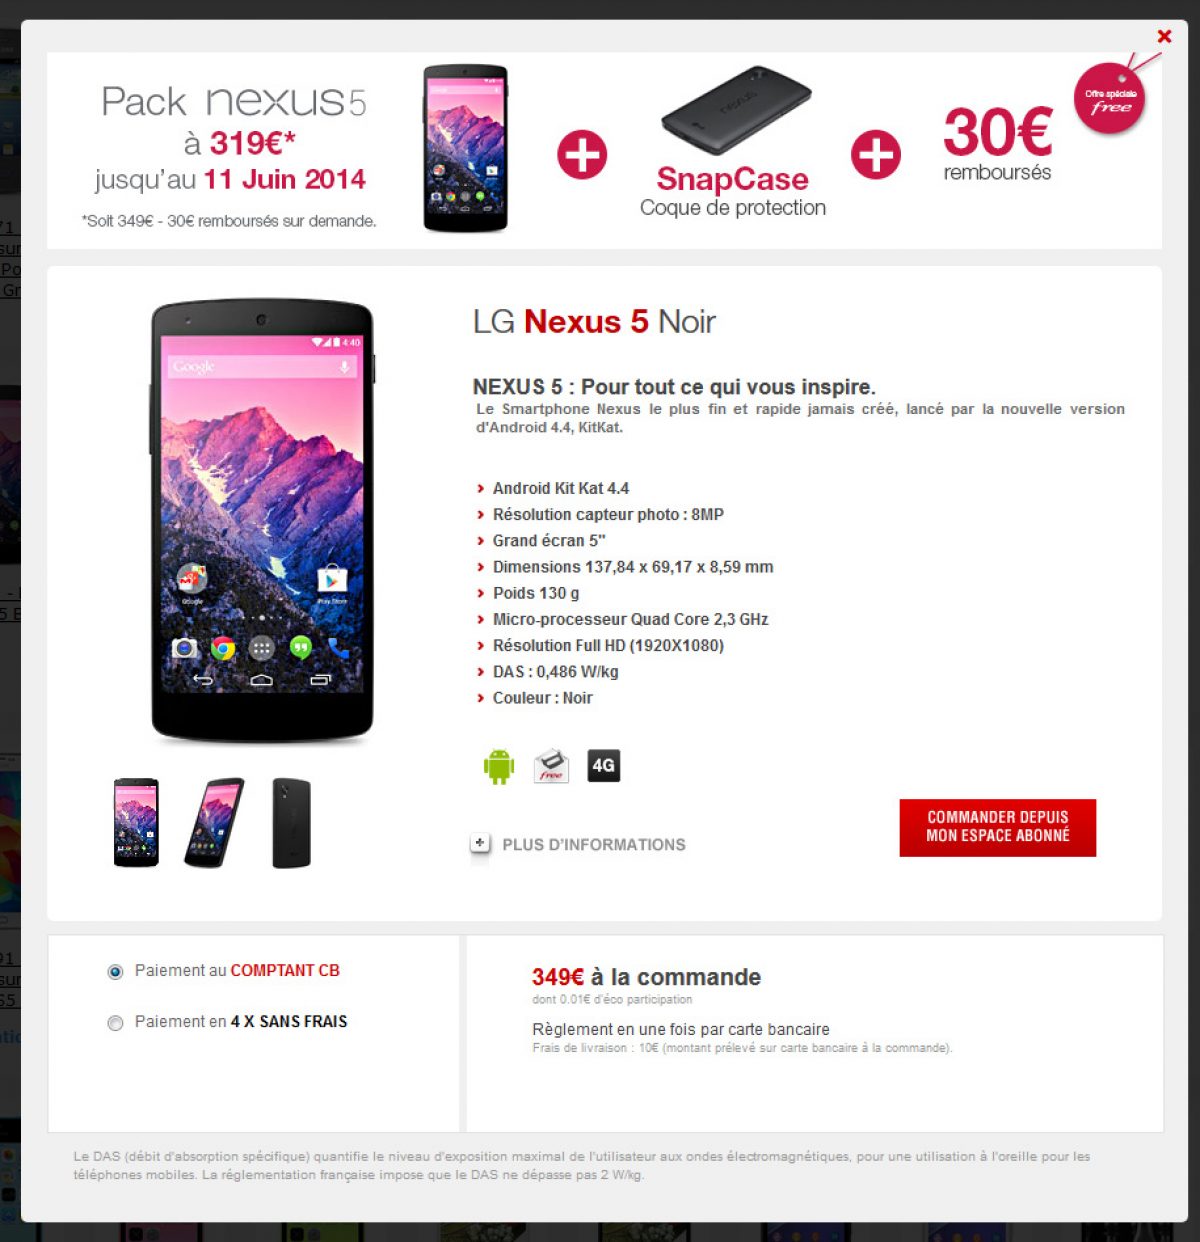 Free Mobile lance une offre spéciale : le pack Nexus 5